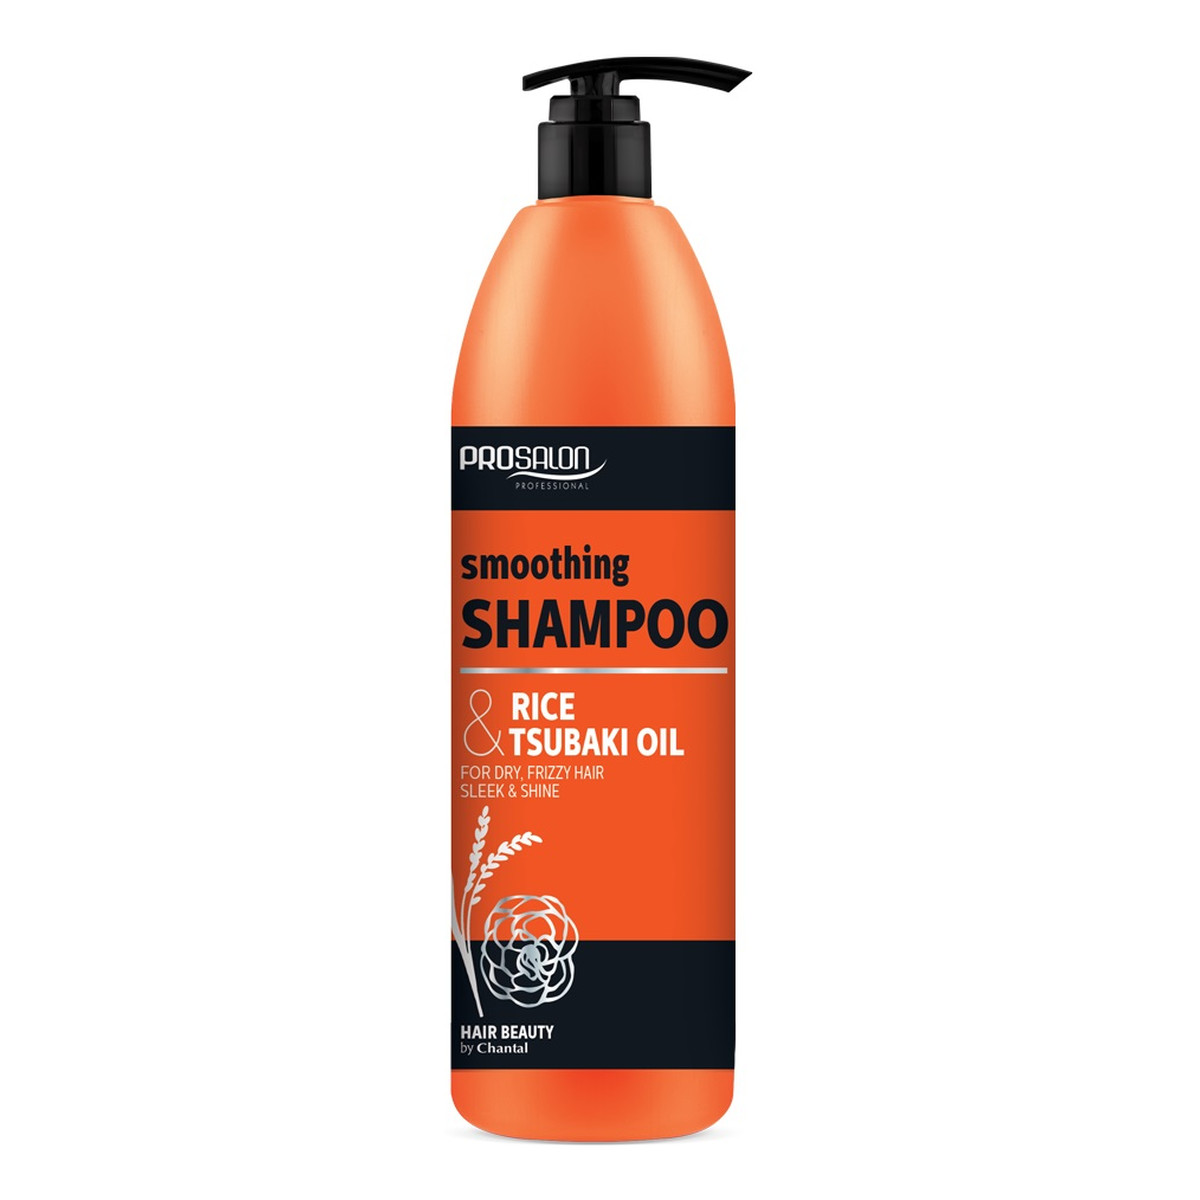 Chantal Profesional Prosalon smoothing shampoo wygładzający szampon do włosów ryż & olej tsubaki 1000g